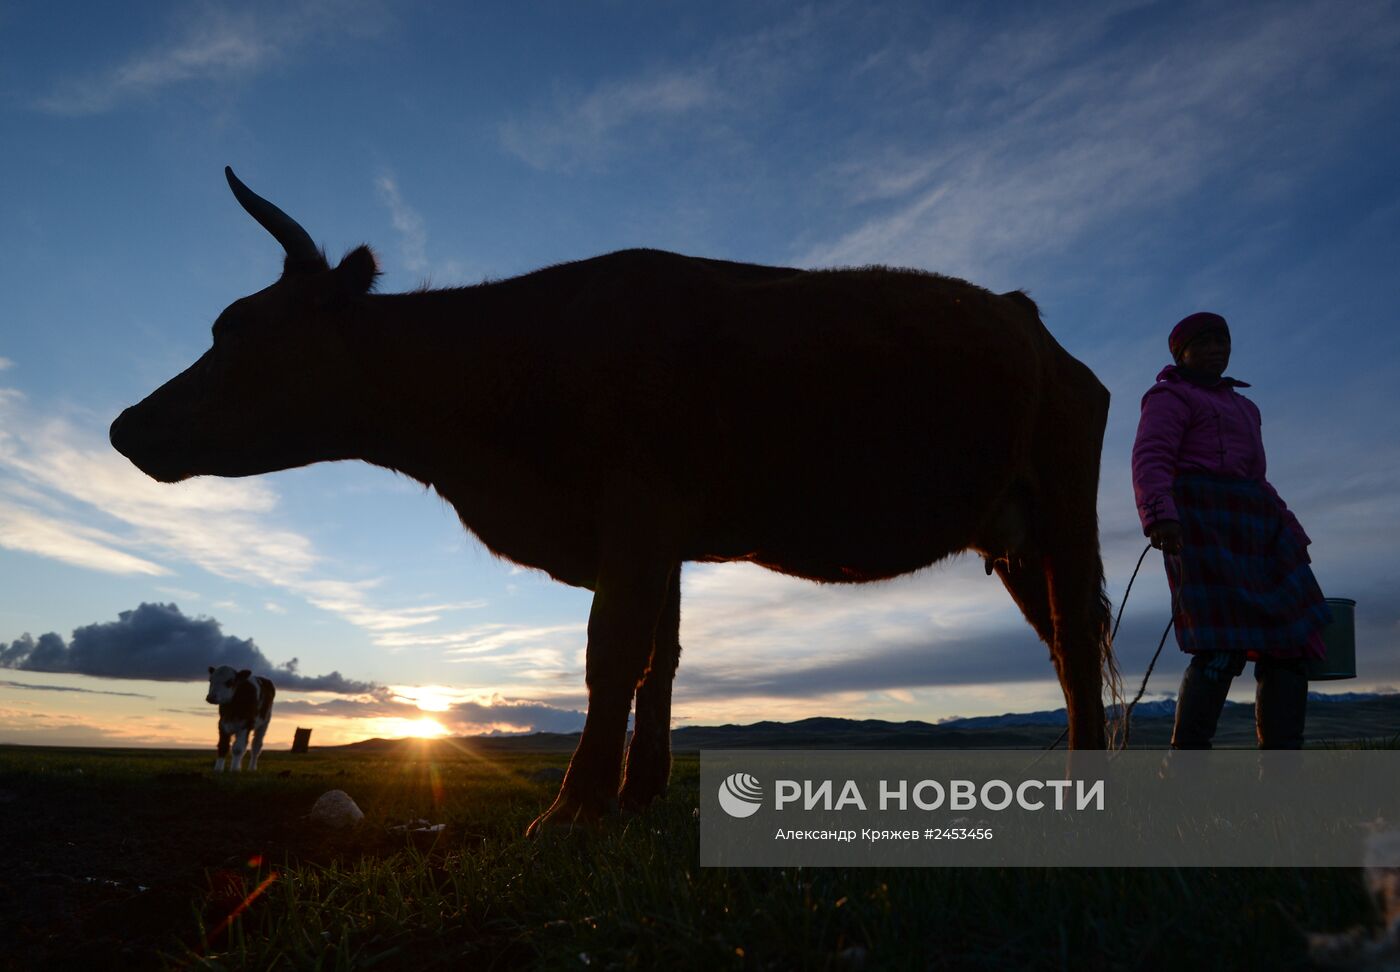 Жизнь чабанов в Республике Алтай